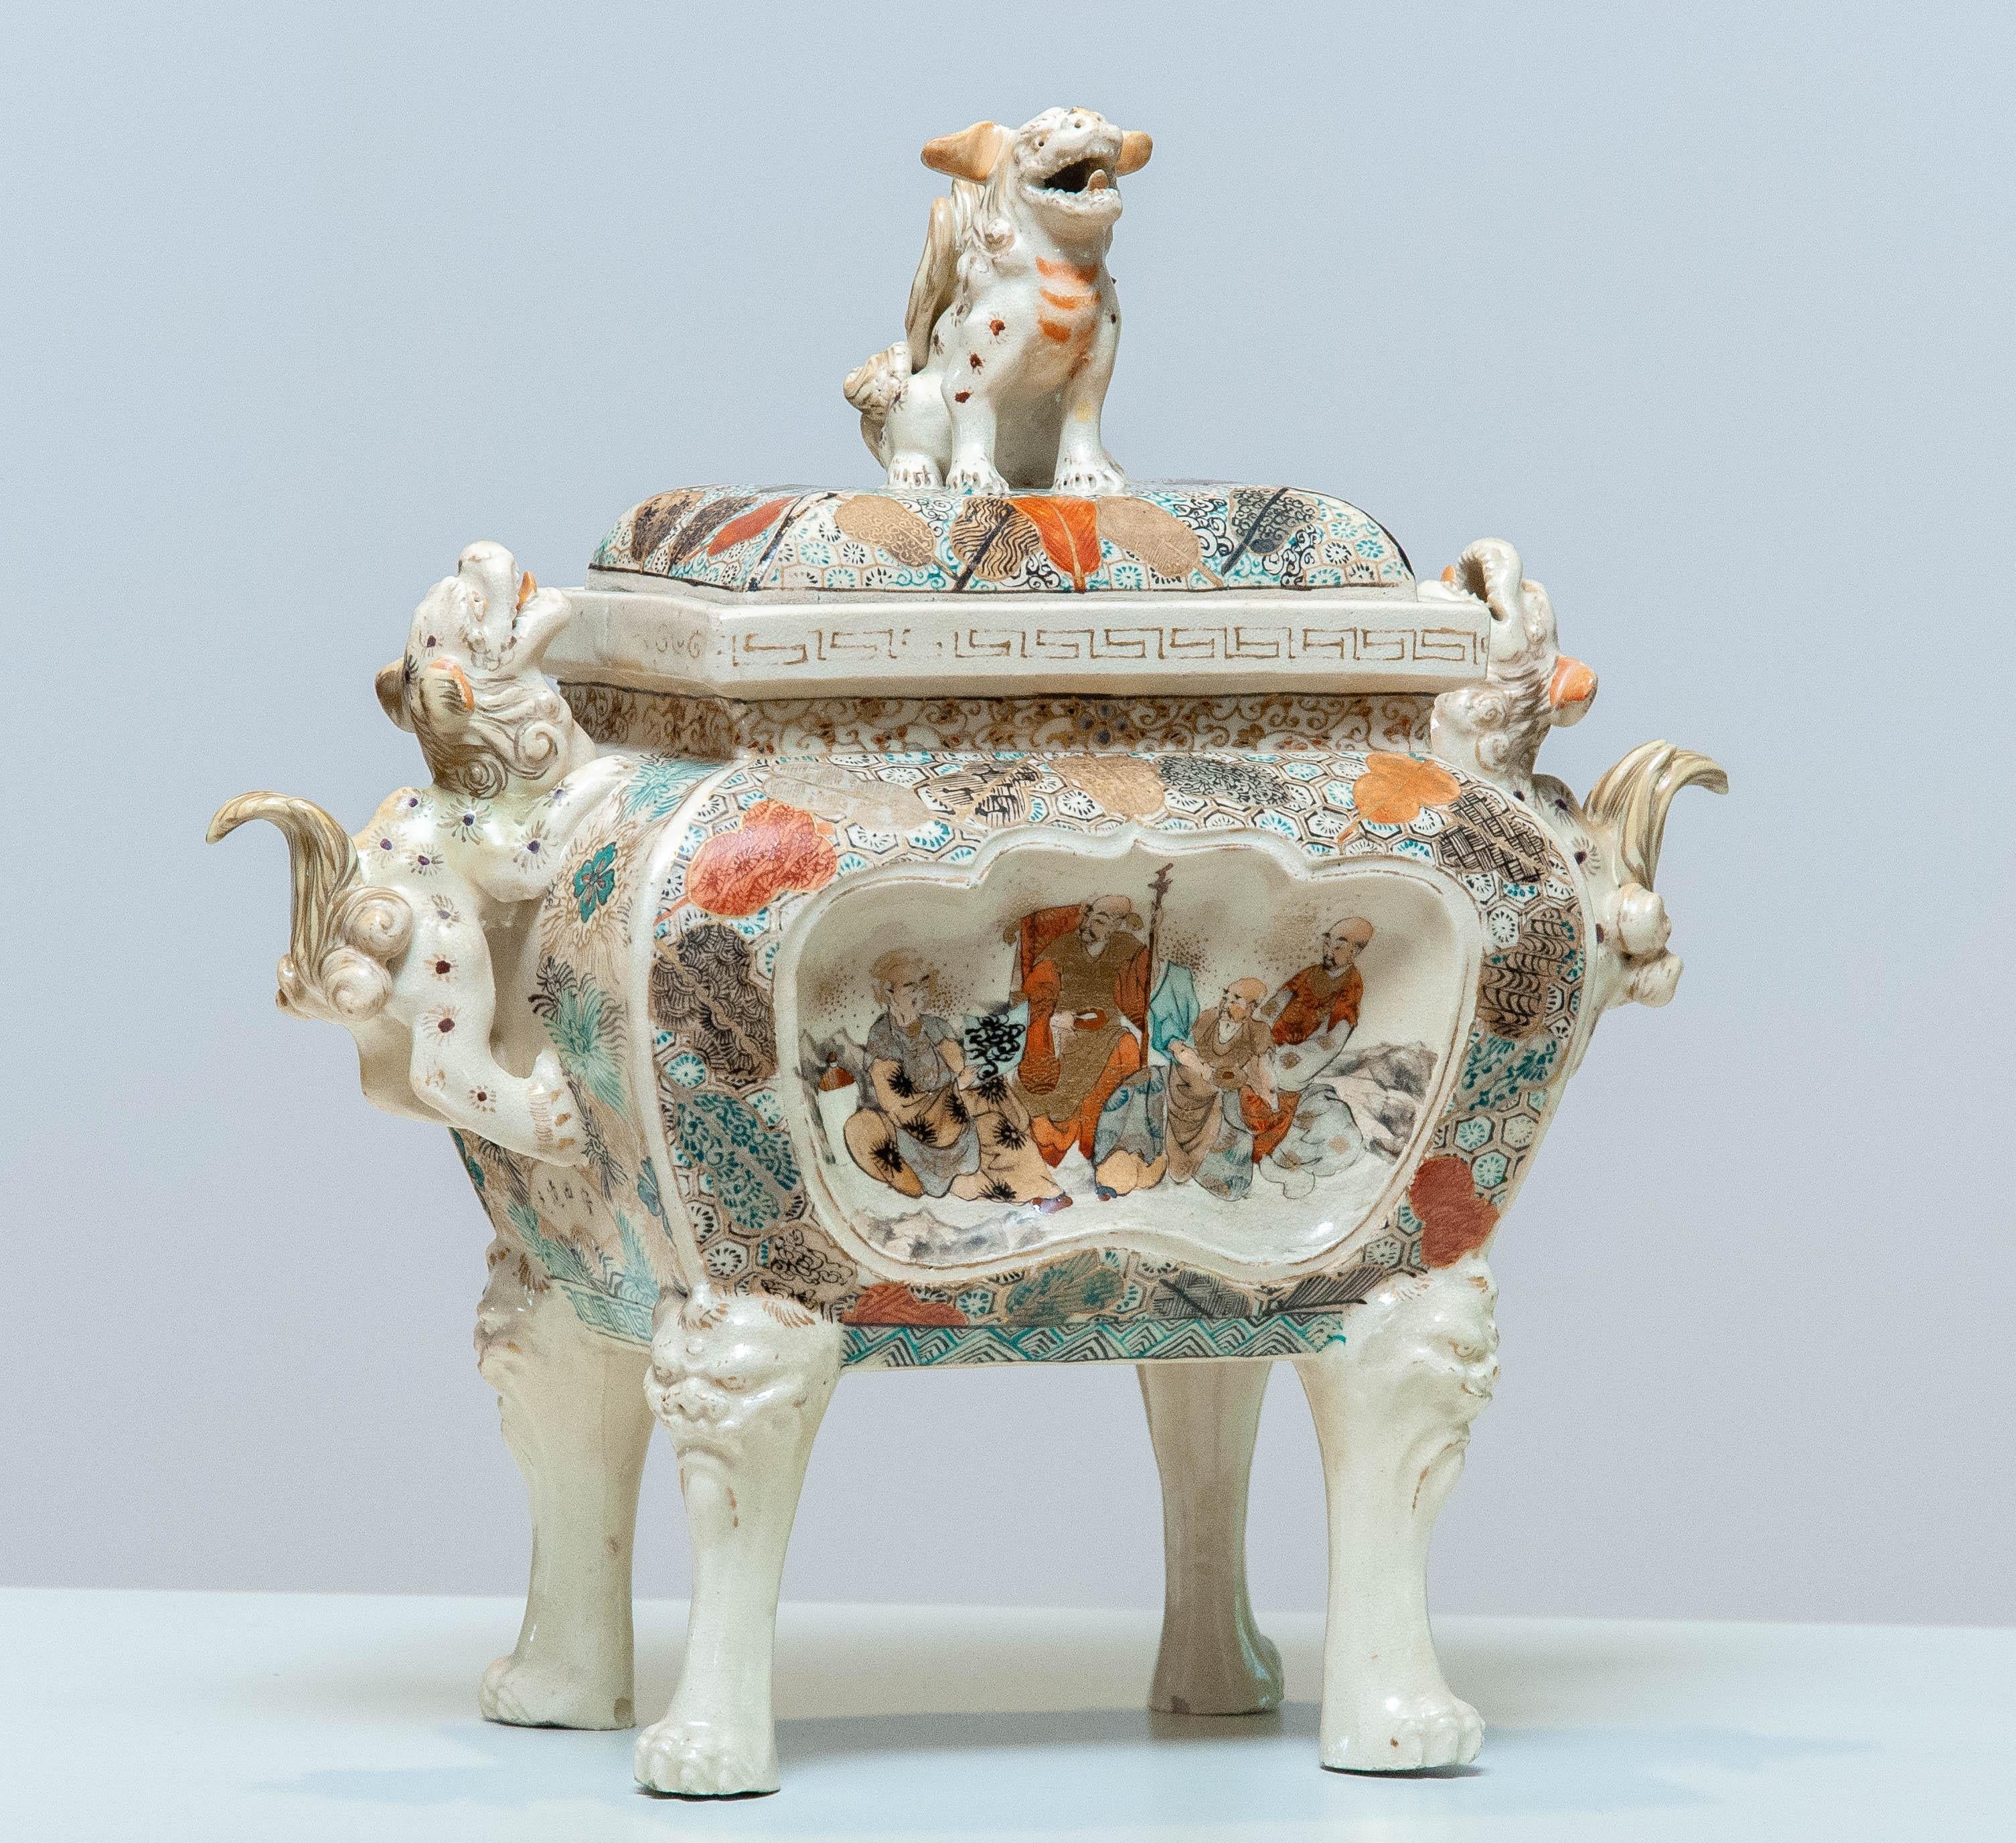 Magnifique porcelaine chinoise d'époque Qing et richement décorée Fang Ding. La jarre à couvercle est également richement décorée d'émaux et d'accents peints à la main et dorés. Les mains des chiens Fu / Foo mâles sont retournées pour protéger